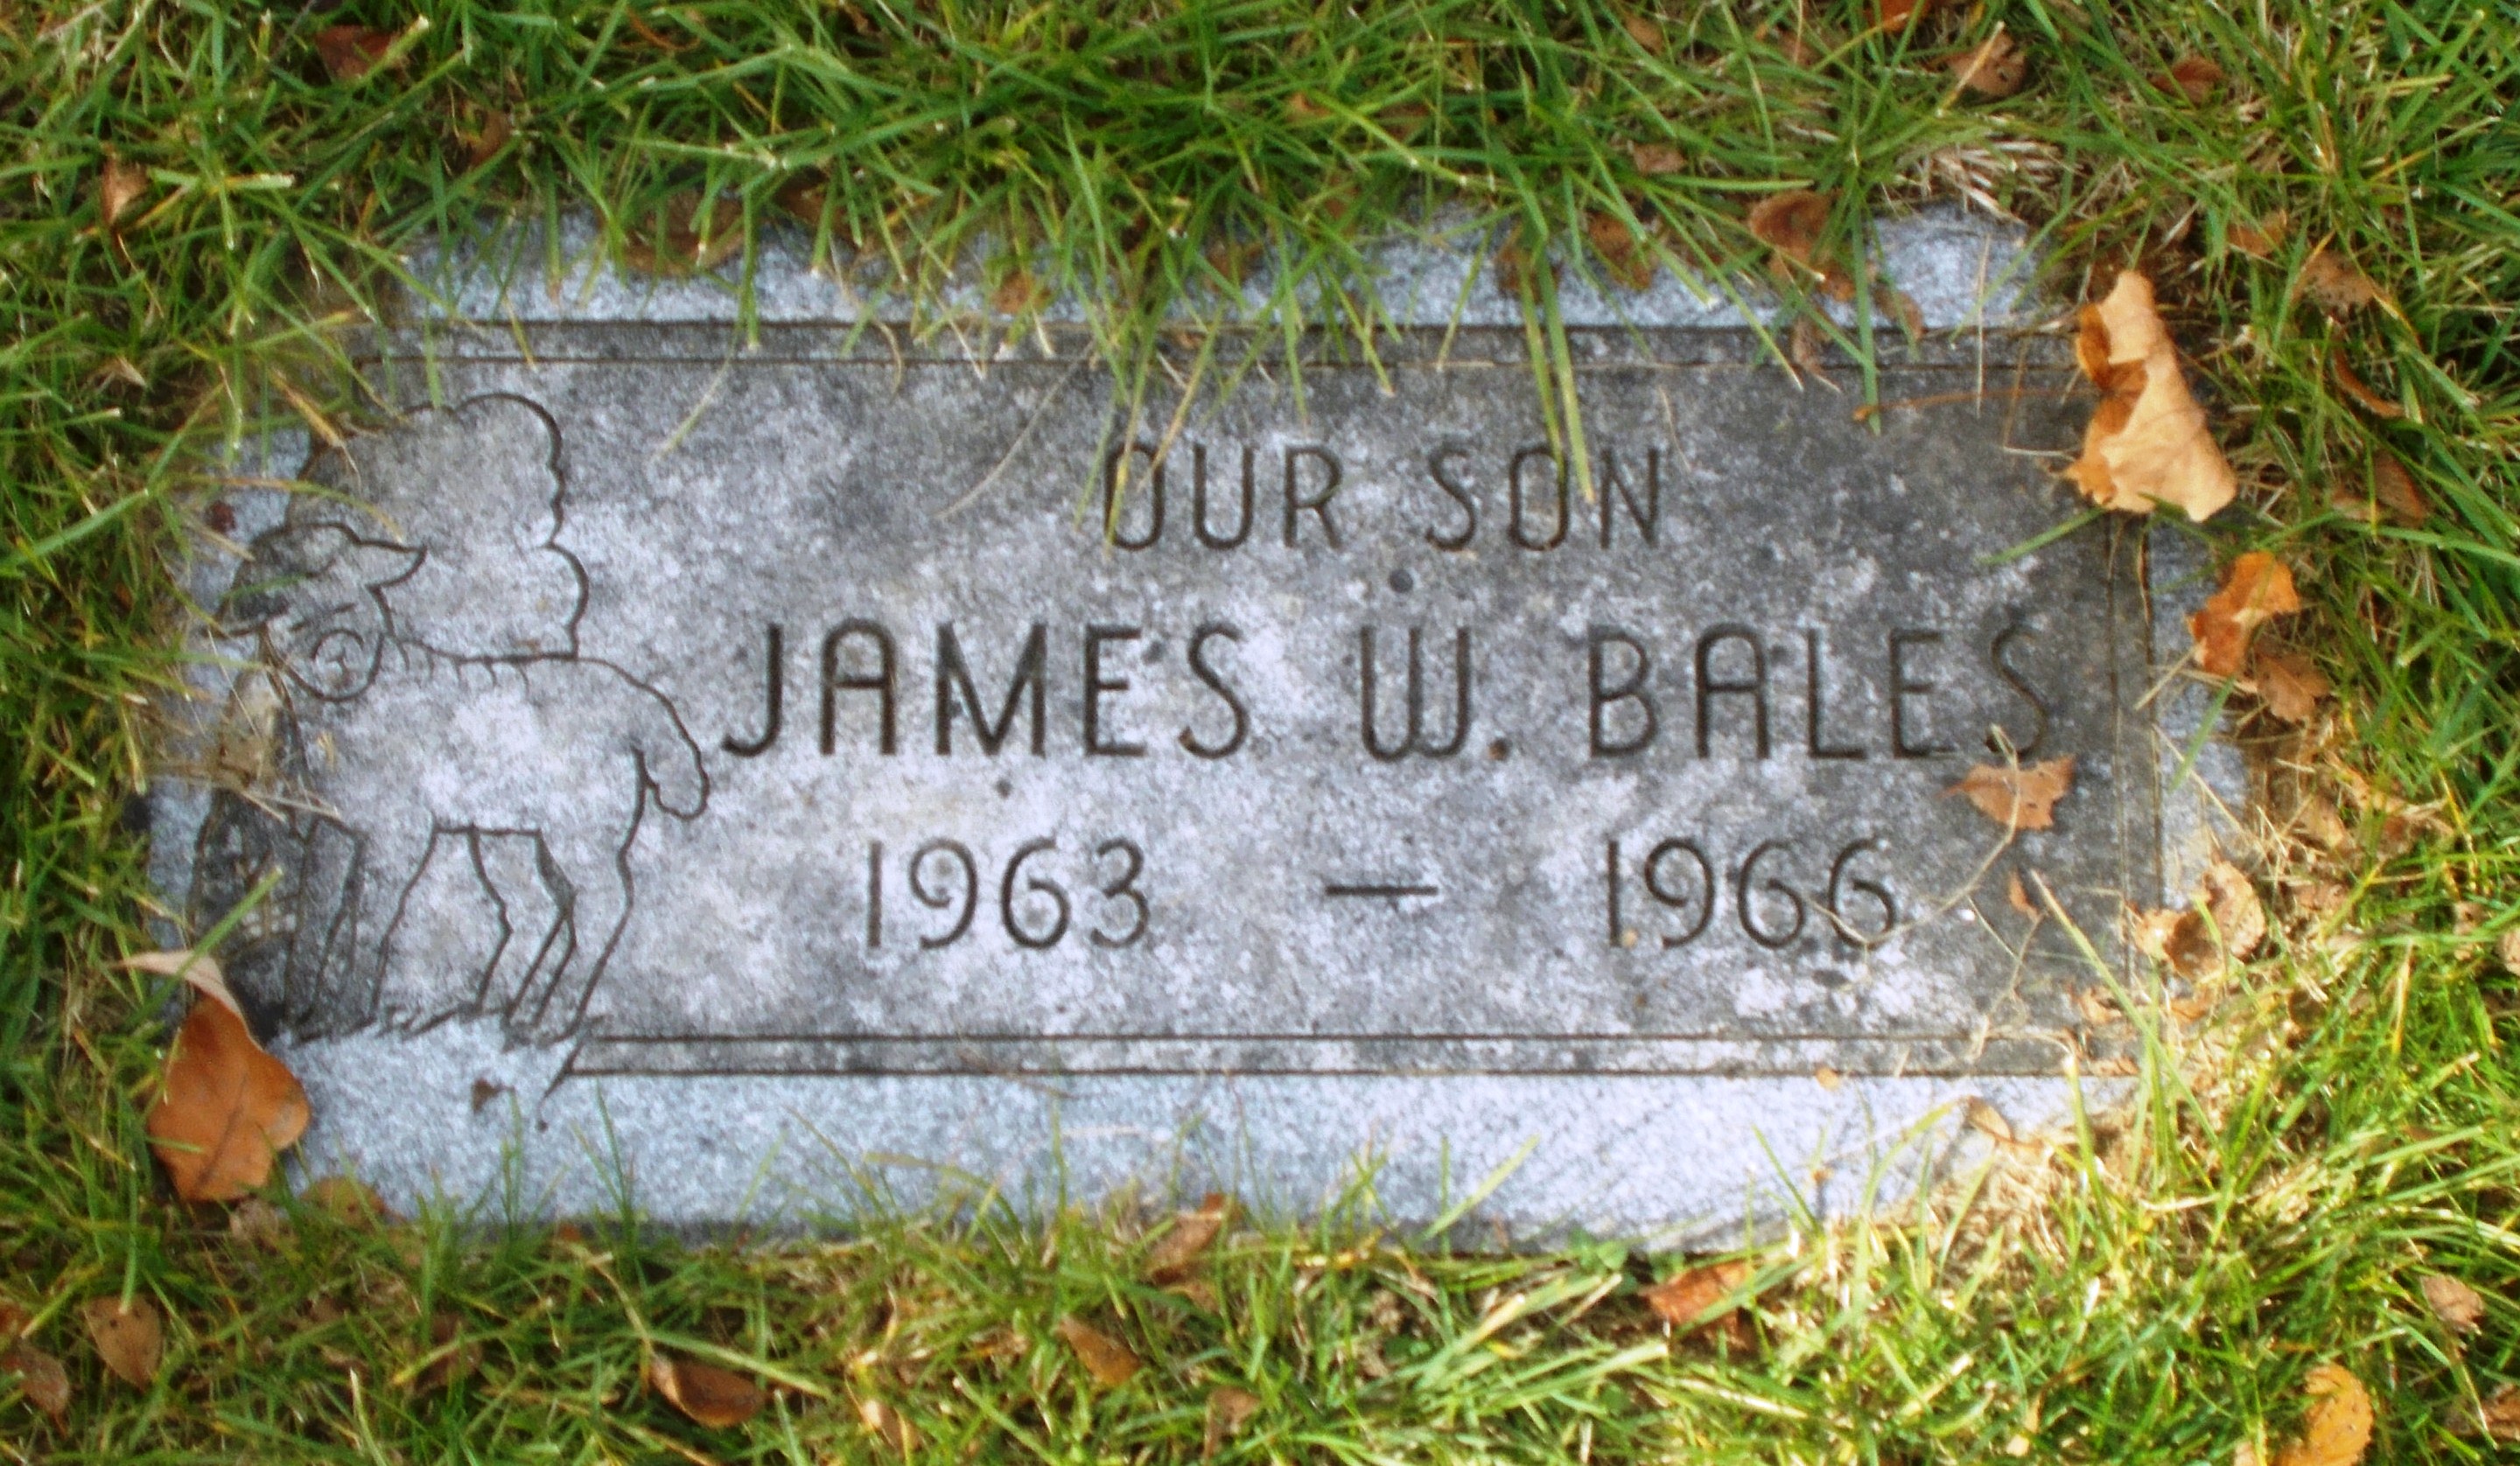 James W Bales